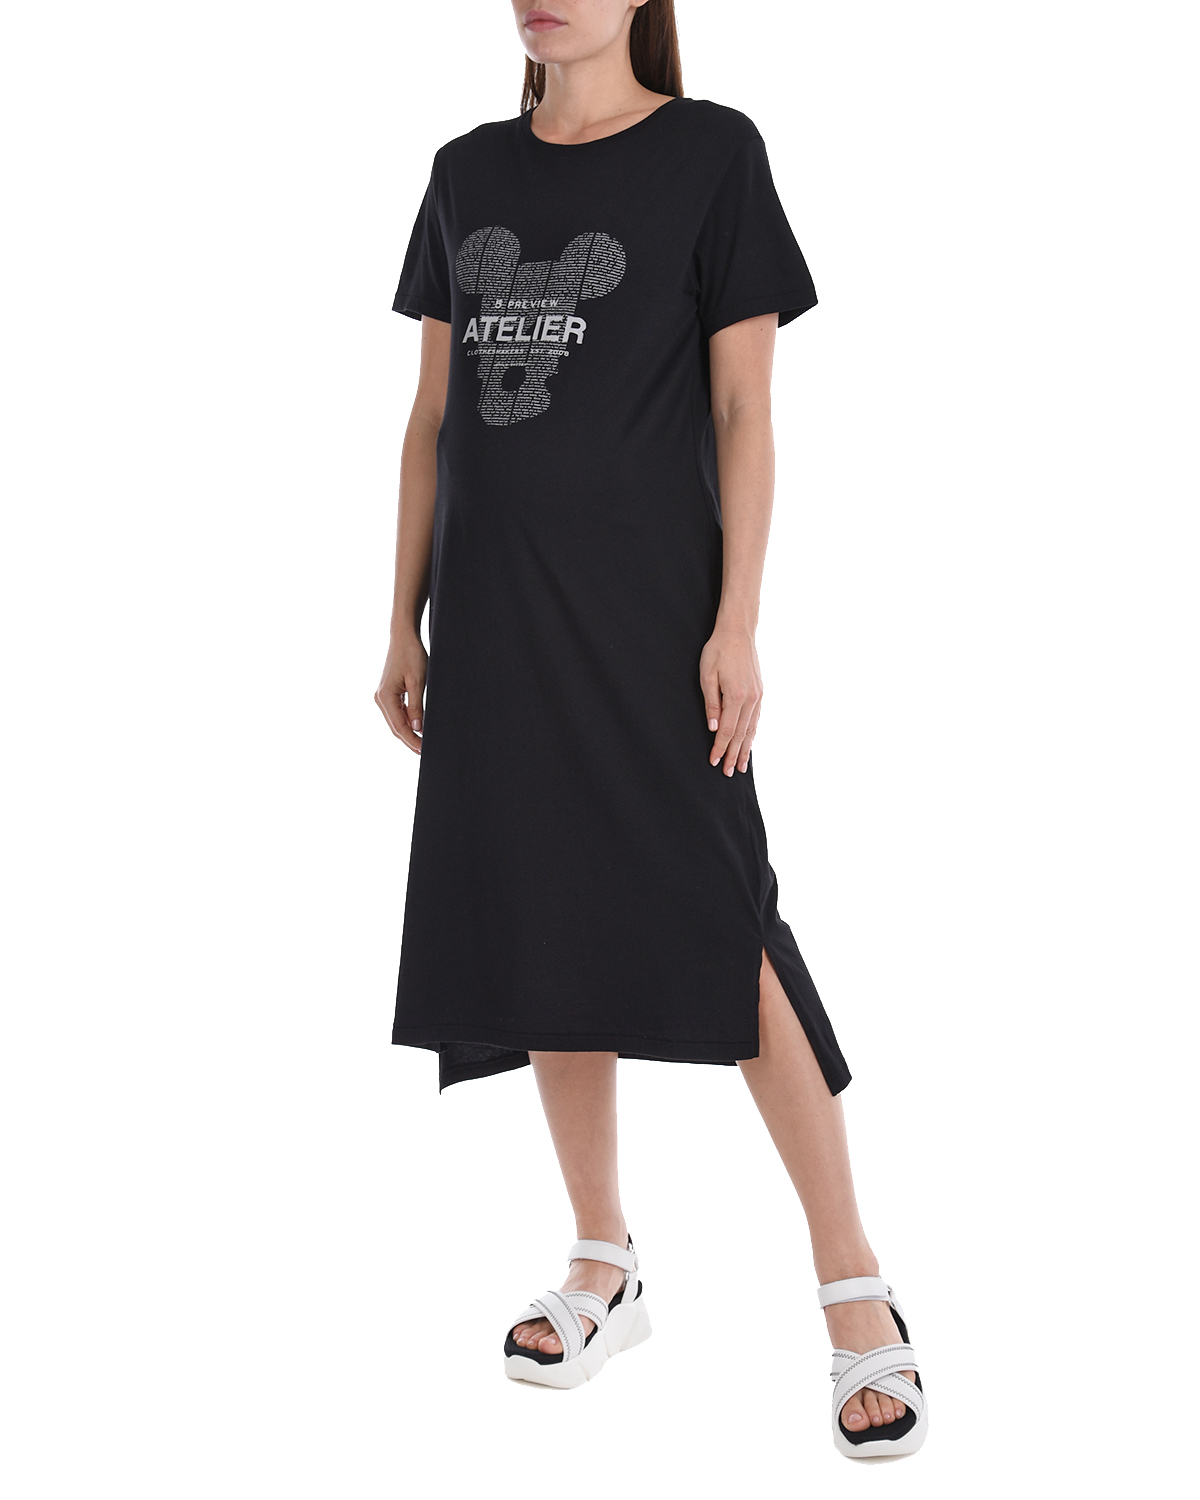 Платье-футболка с принтом "Atelier" 5 Preview, размер 40, цвет черный - фото 4